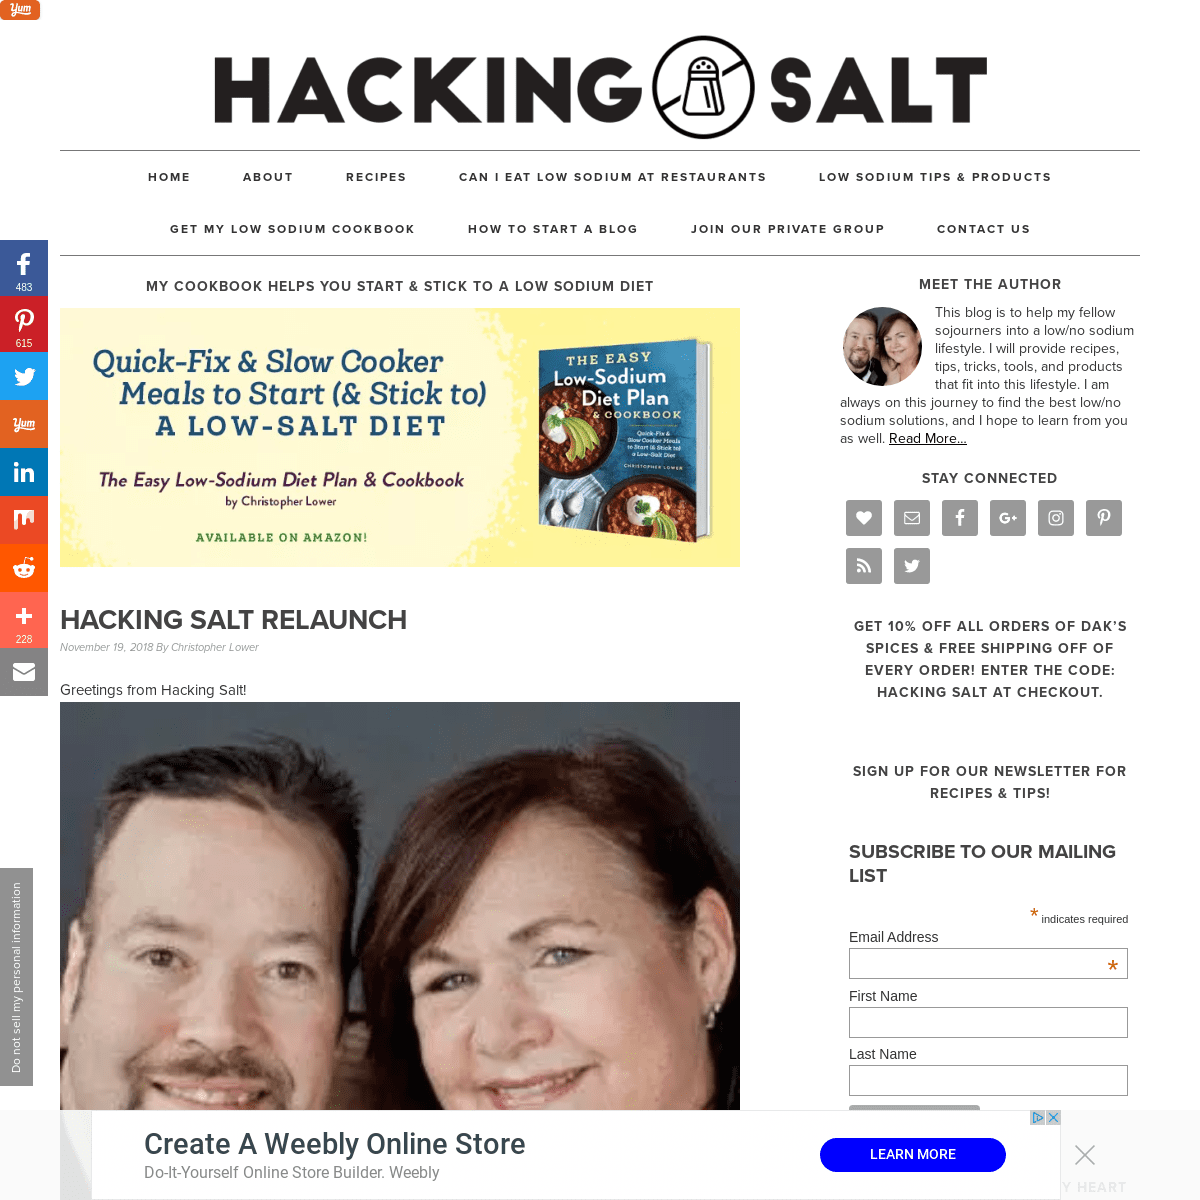 A complete backup of hackingsalt.com